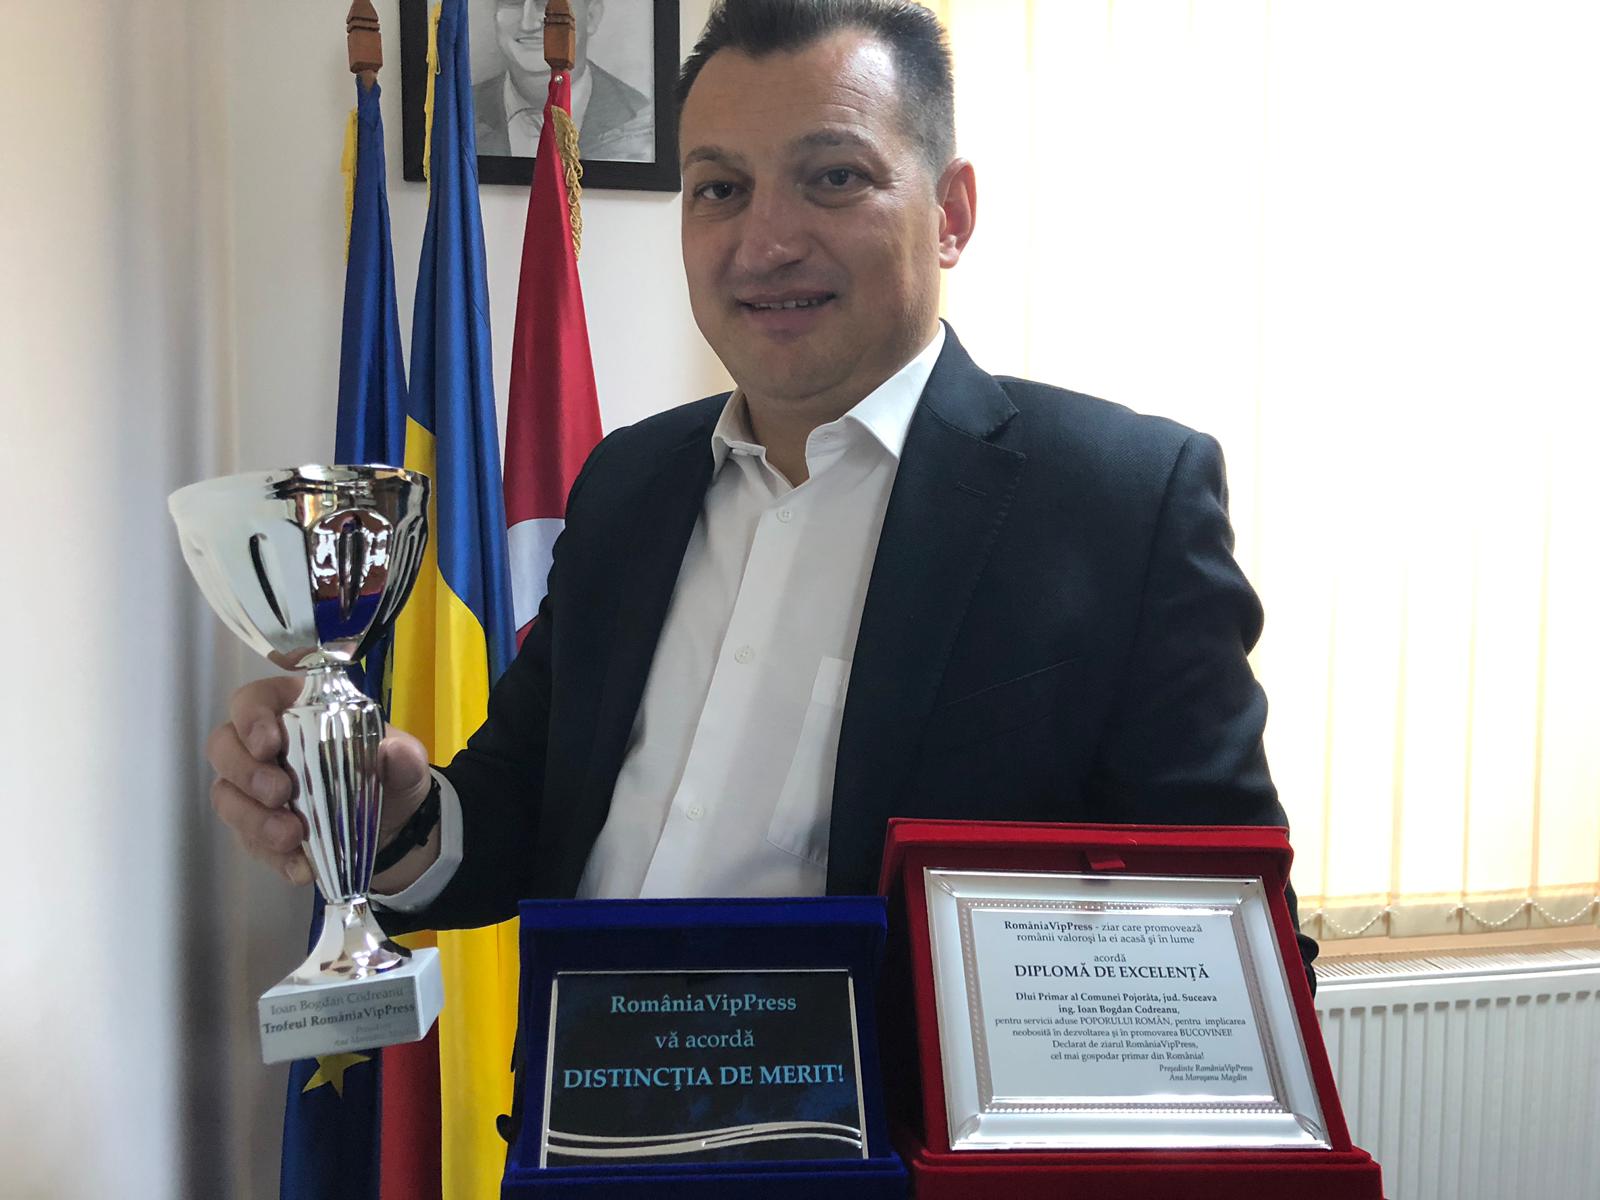 Trofeul RomâniaVipPress, Diploma de Excelență și Distincția de merit, au mers la Ioan Bogdan Codreanu!